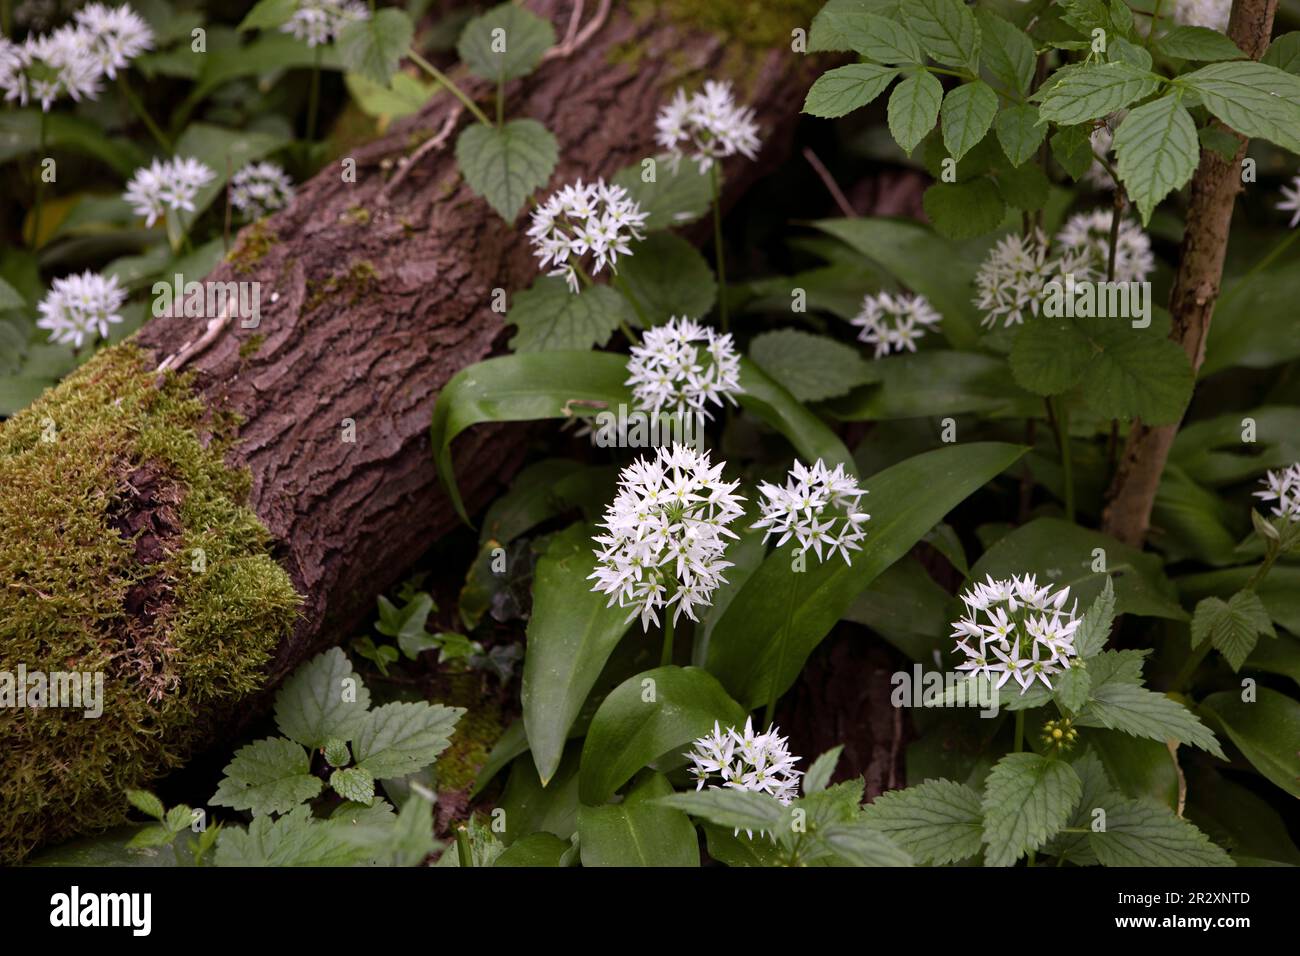 Allium ursinum bekannt als wilder Knoblauch, Ramsons, Cowleekes, Buckrams, breiter Knoblauch, Im Holz wachsen Knoblauch, Bärenlauchpflanzen. Wilde Kräuter Stockfoto